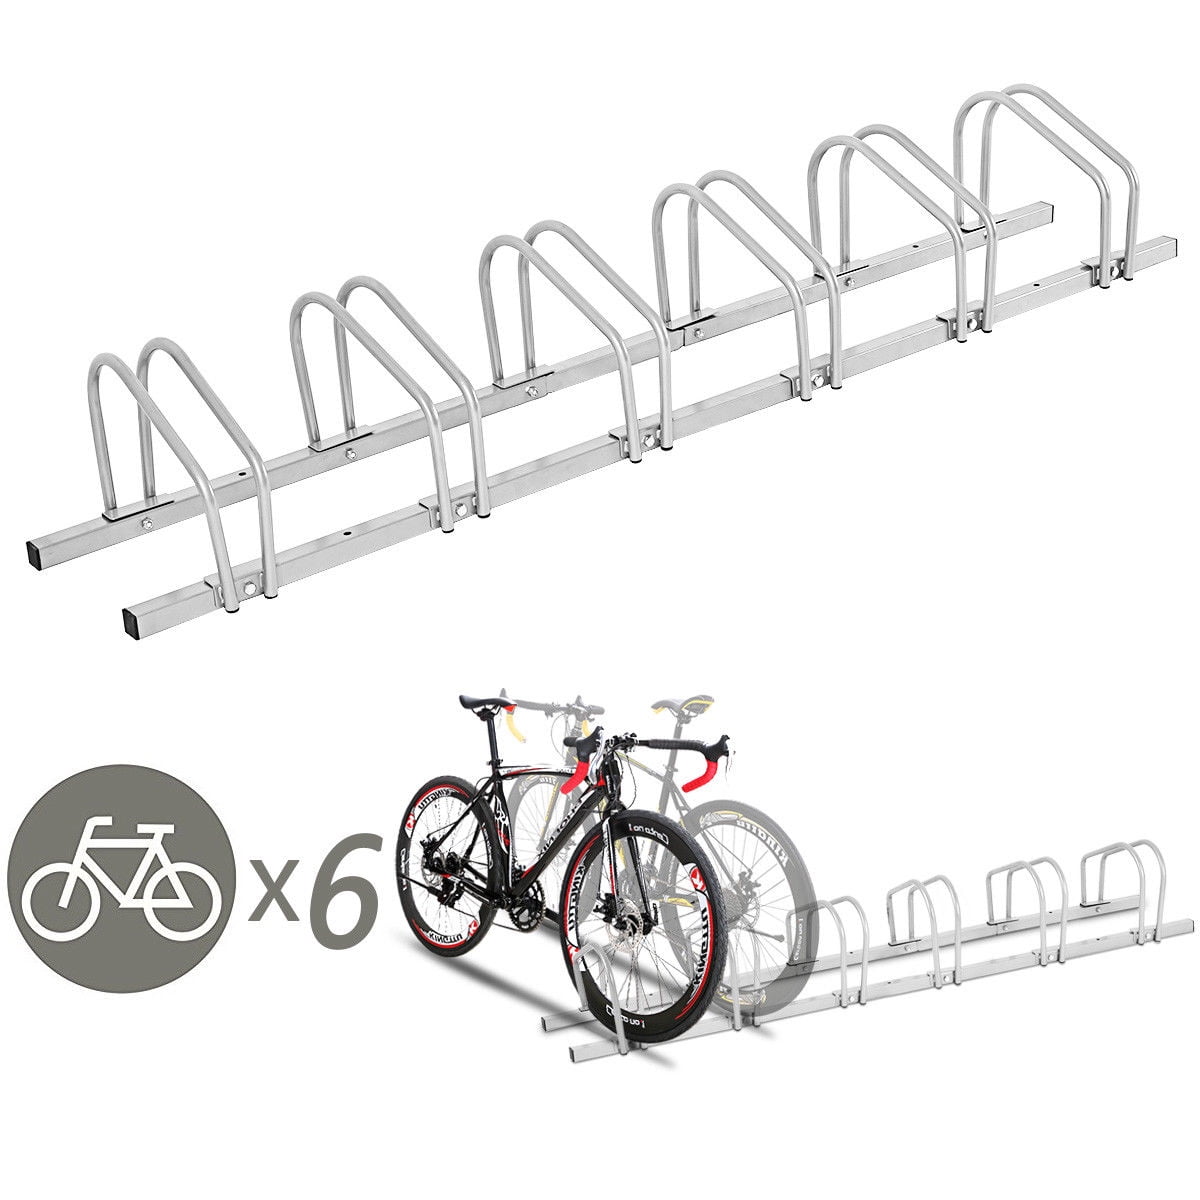 6 Racks, Black HOMCOM Bike Stand Parking Rack Floor or Wall Mount Bicycle Cycle Storage Locking Stand